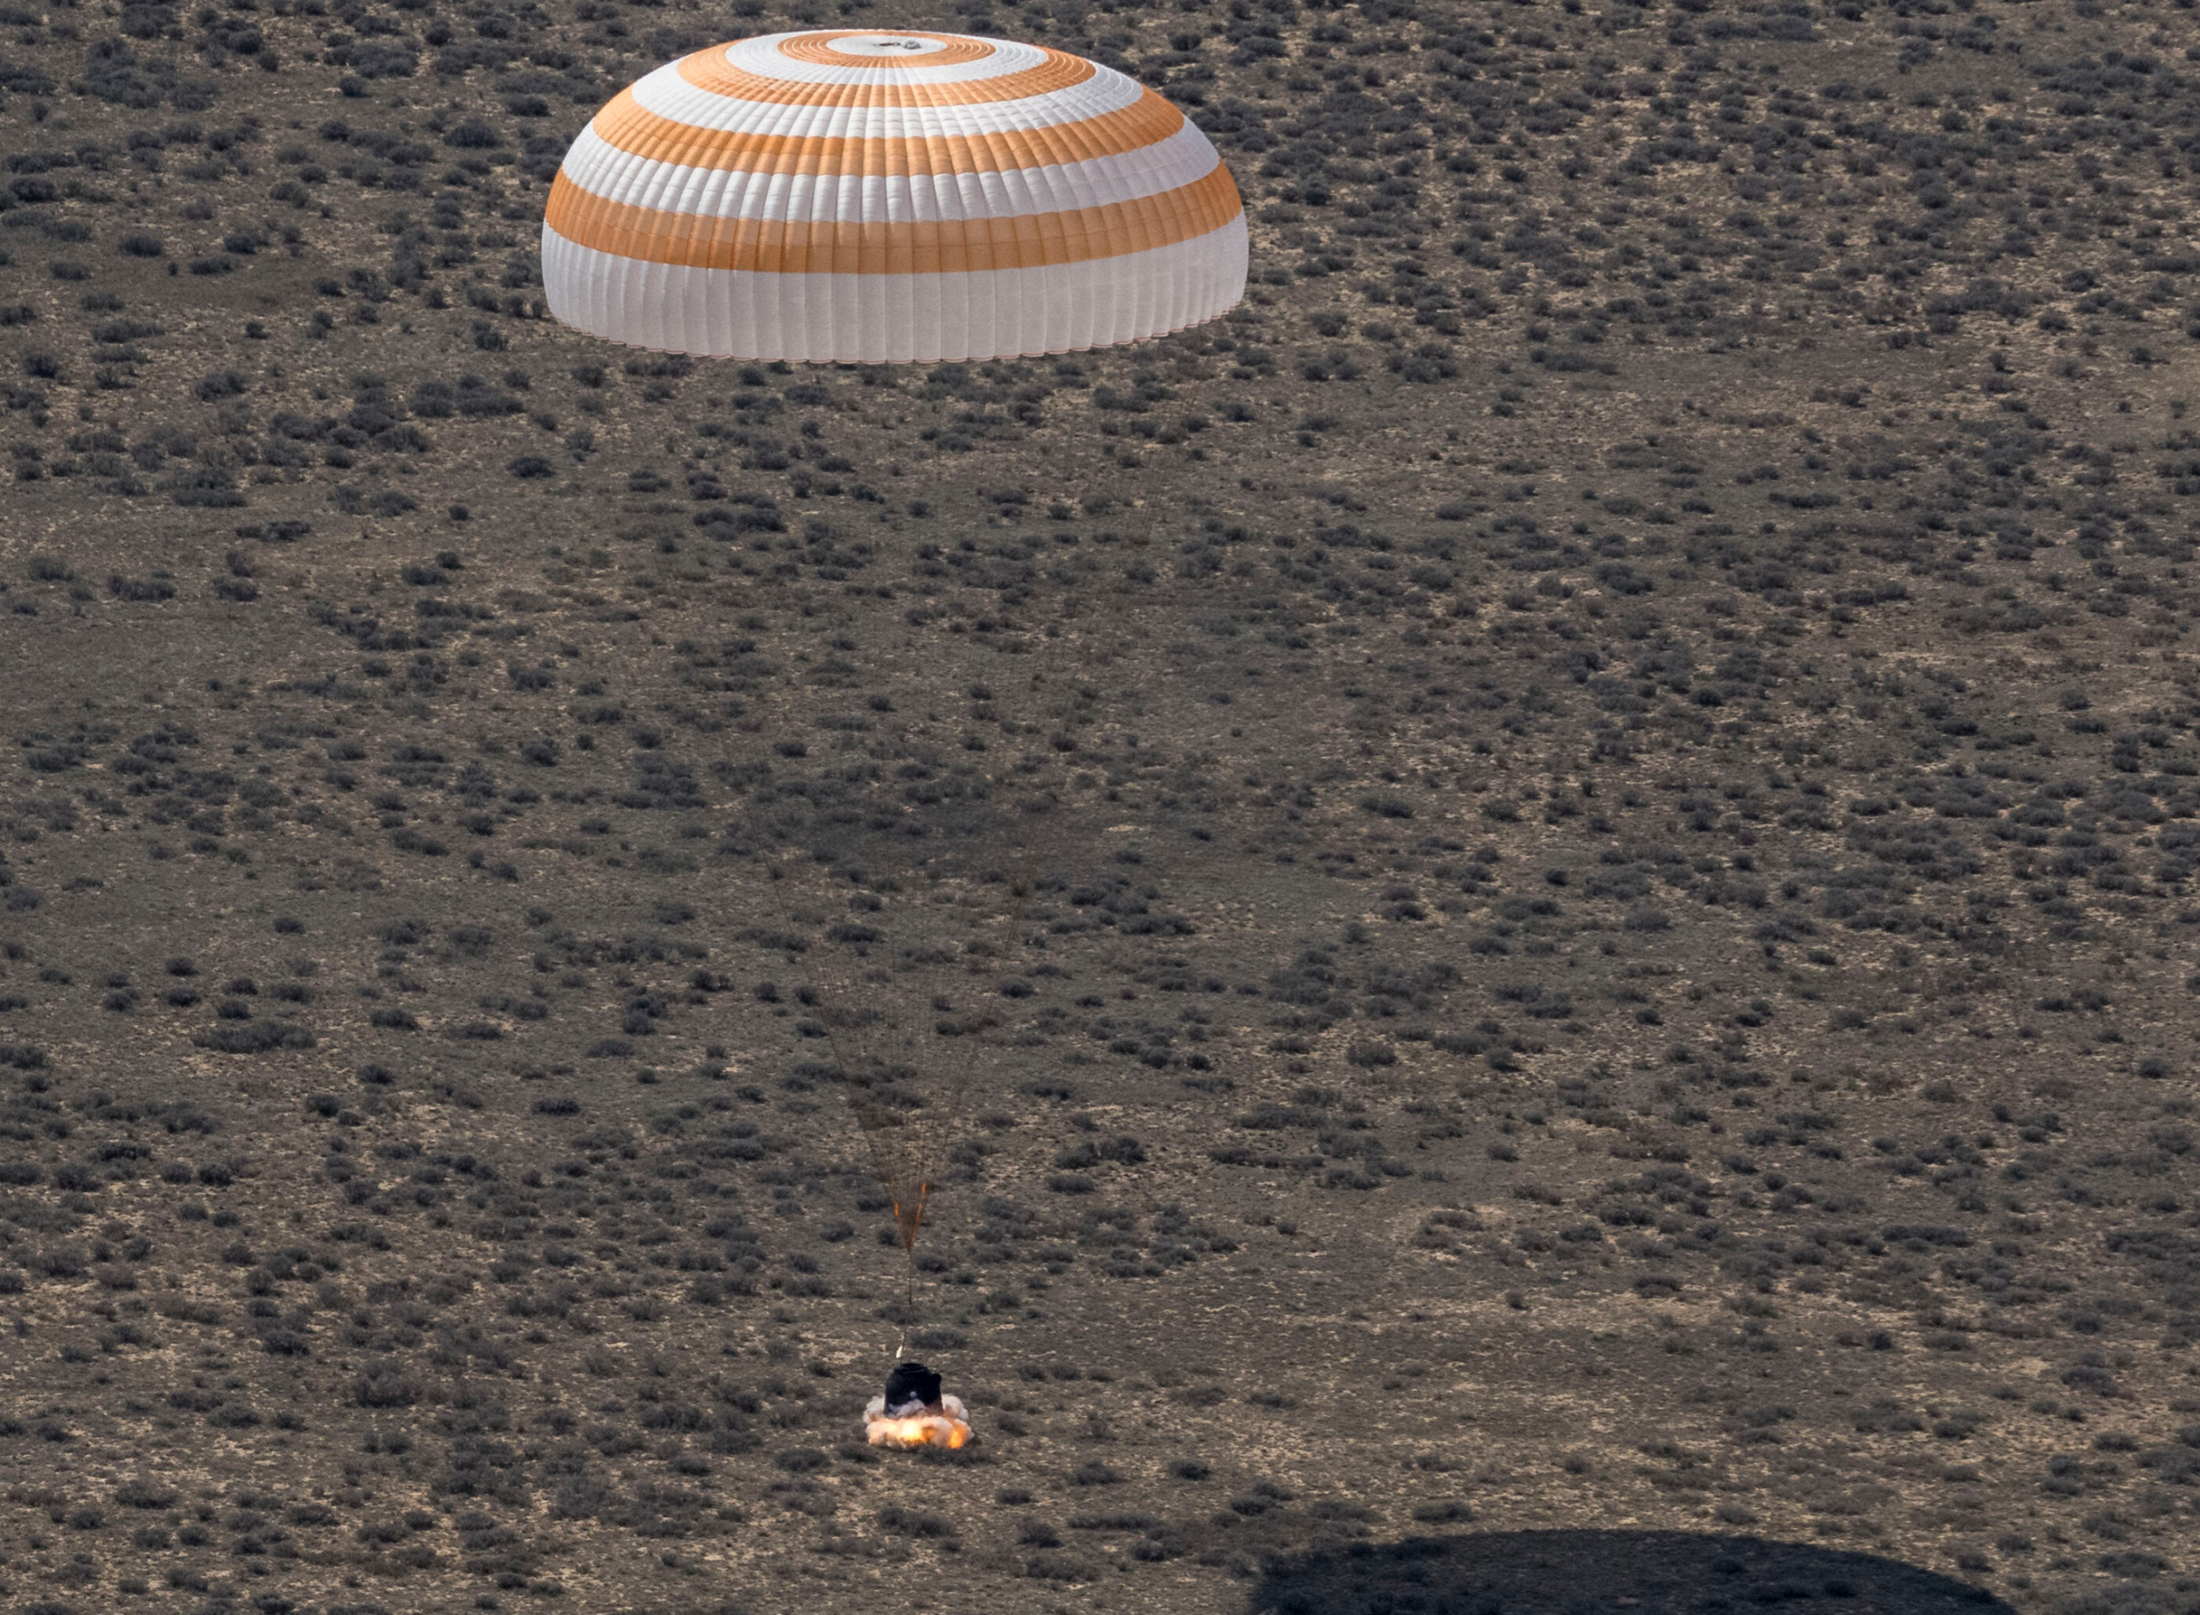 Soyuz kapsula s međunarodnom posadom uspješno sletjela u Kazahstan. NASA.